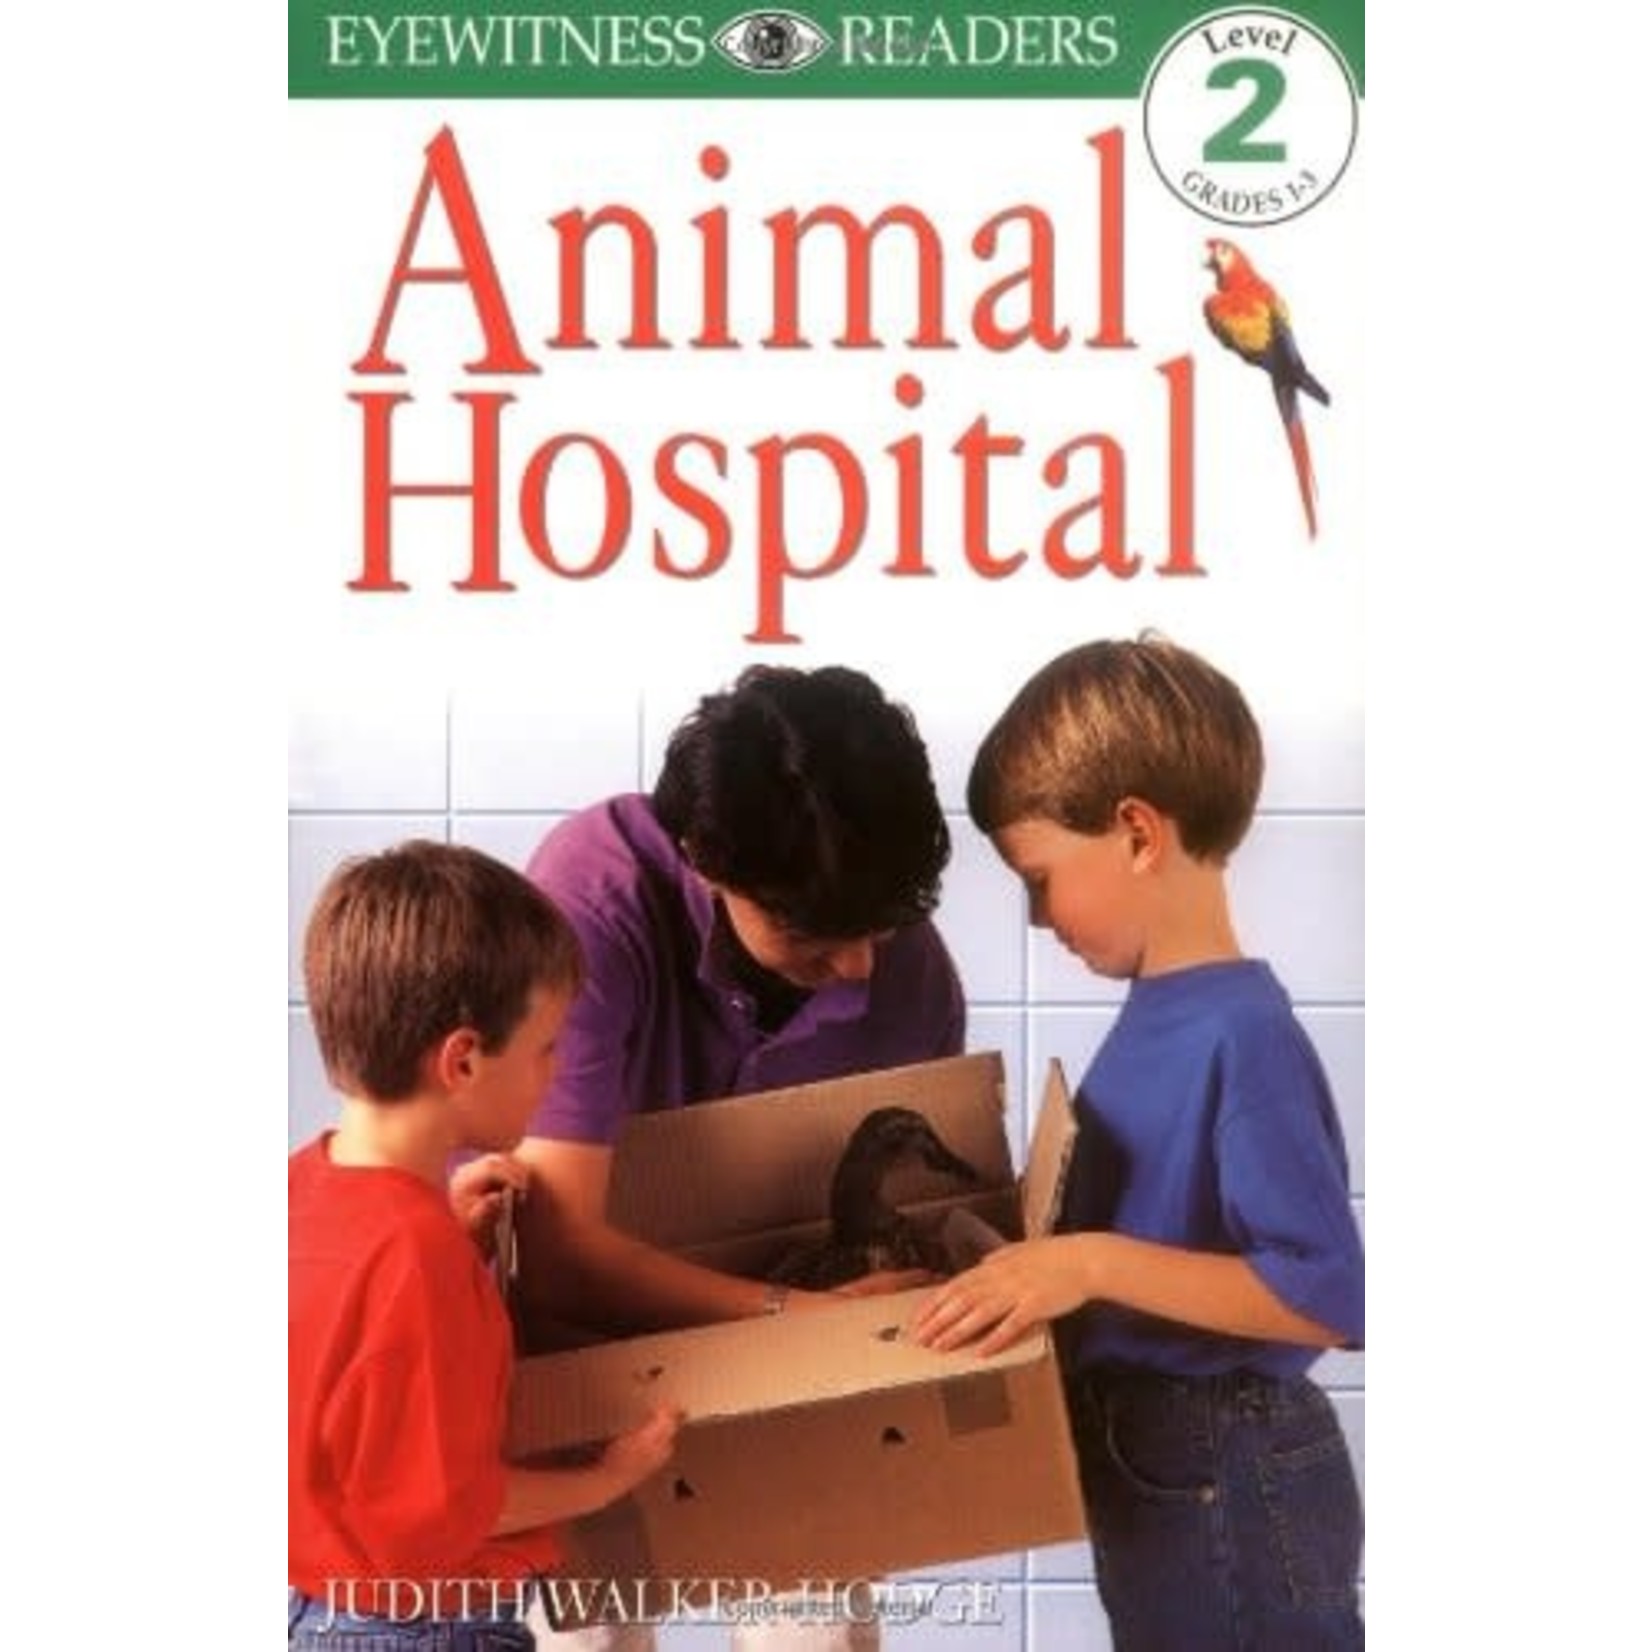 Judith Walker Animal Hospital - Know it all Reader 2